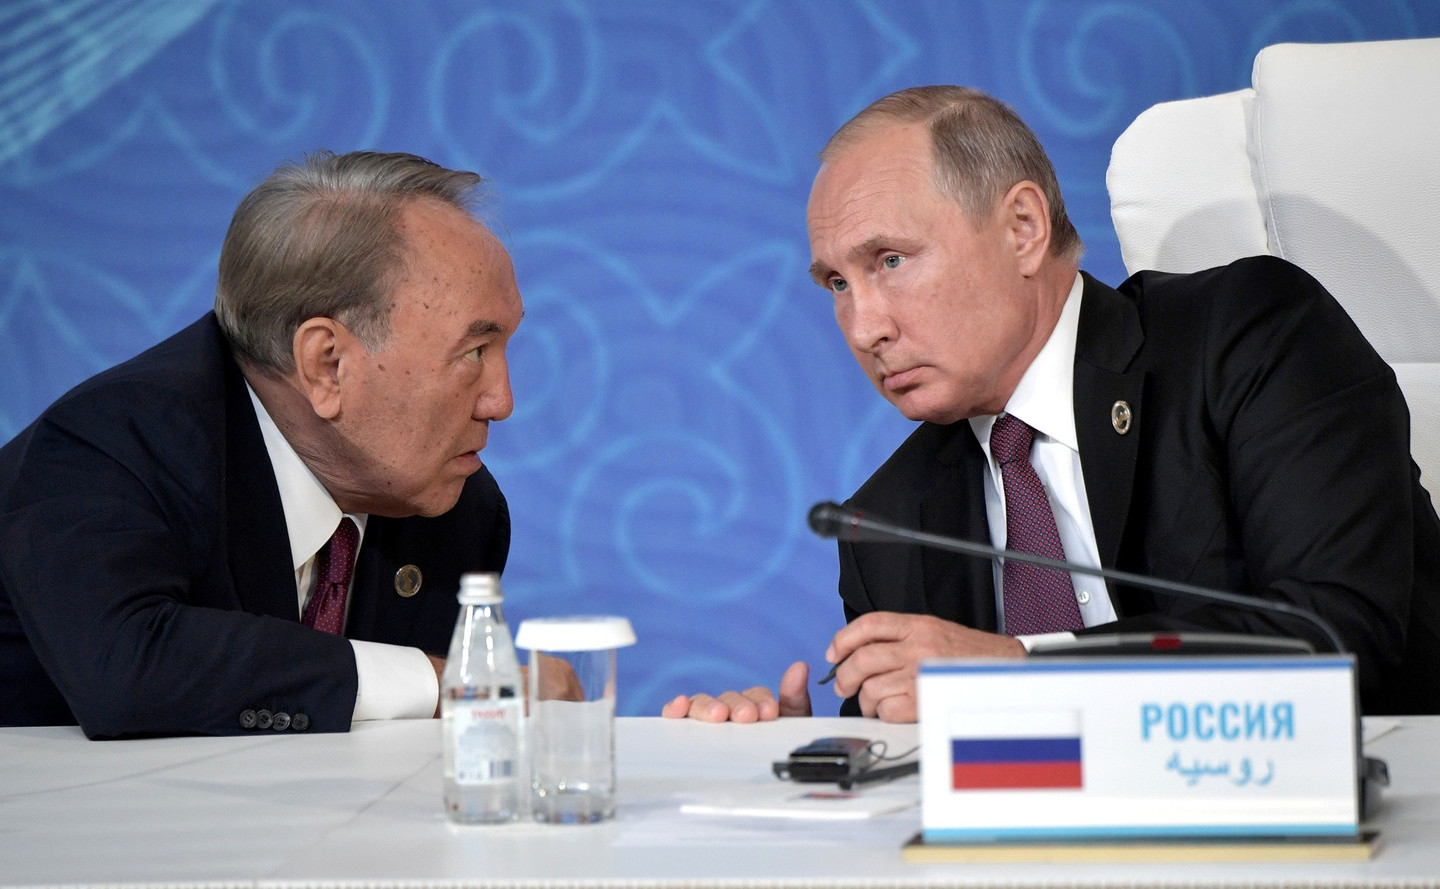 Нурсултан Назарбаев и Владимир Путин. Фото: ©Официальный сайт президента России
